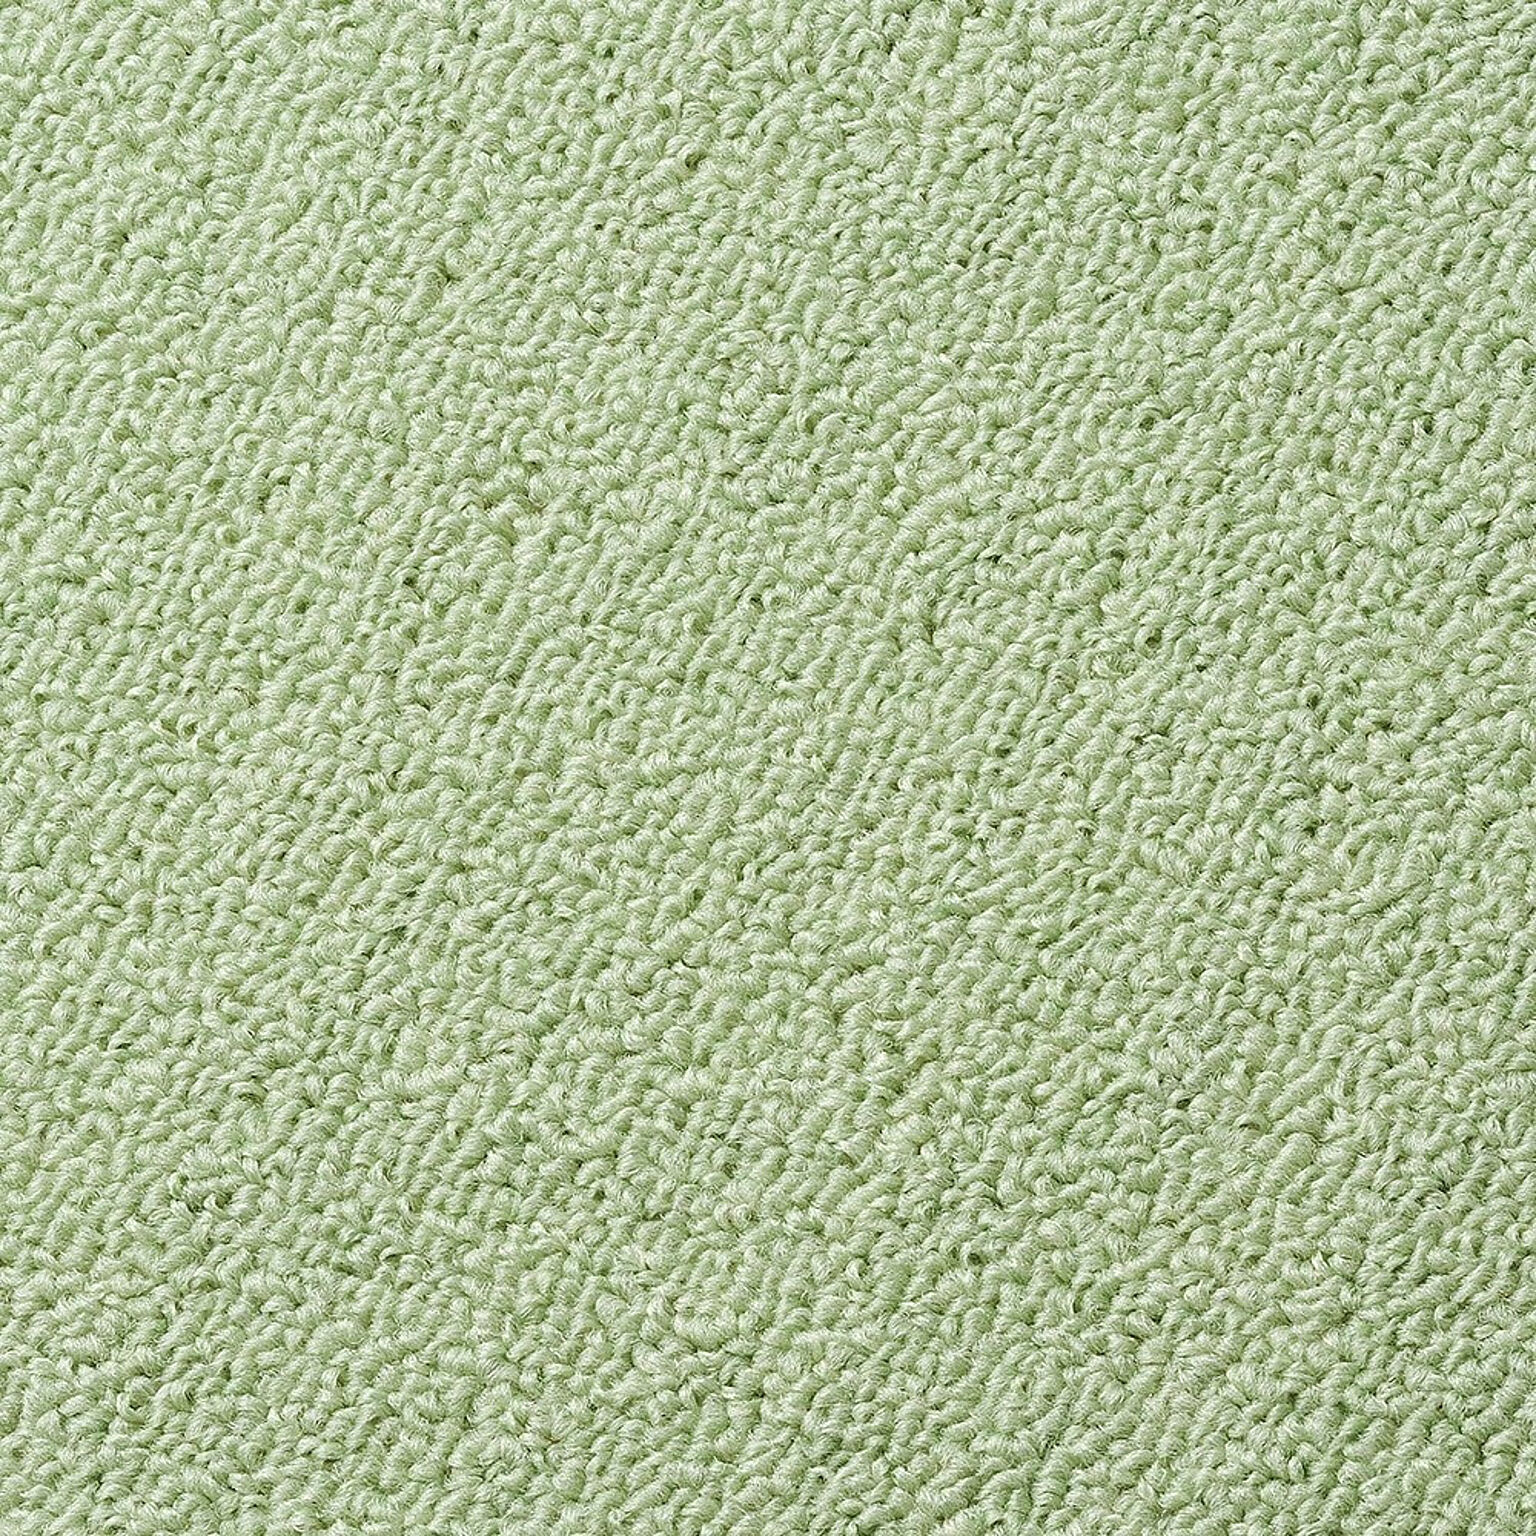 絨毯 カーペット 江戸間 八畳 カラフルループ (Y) 8帖 約352×352cm 8畳 ジュータン ホットカーペット対応 日本製 防ダニ 抗菌 シンプル 無地 遊び毛が出にくい 引っ越し 新生活